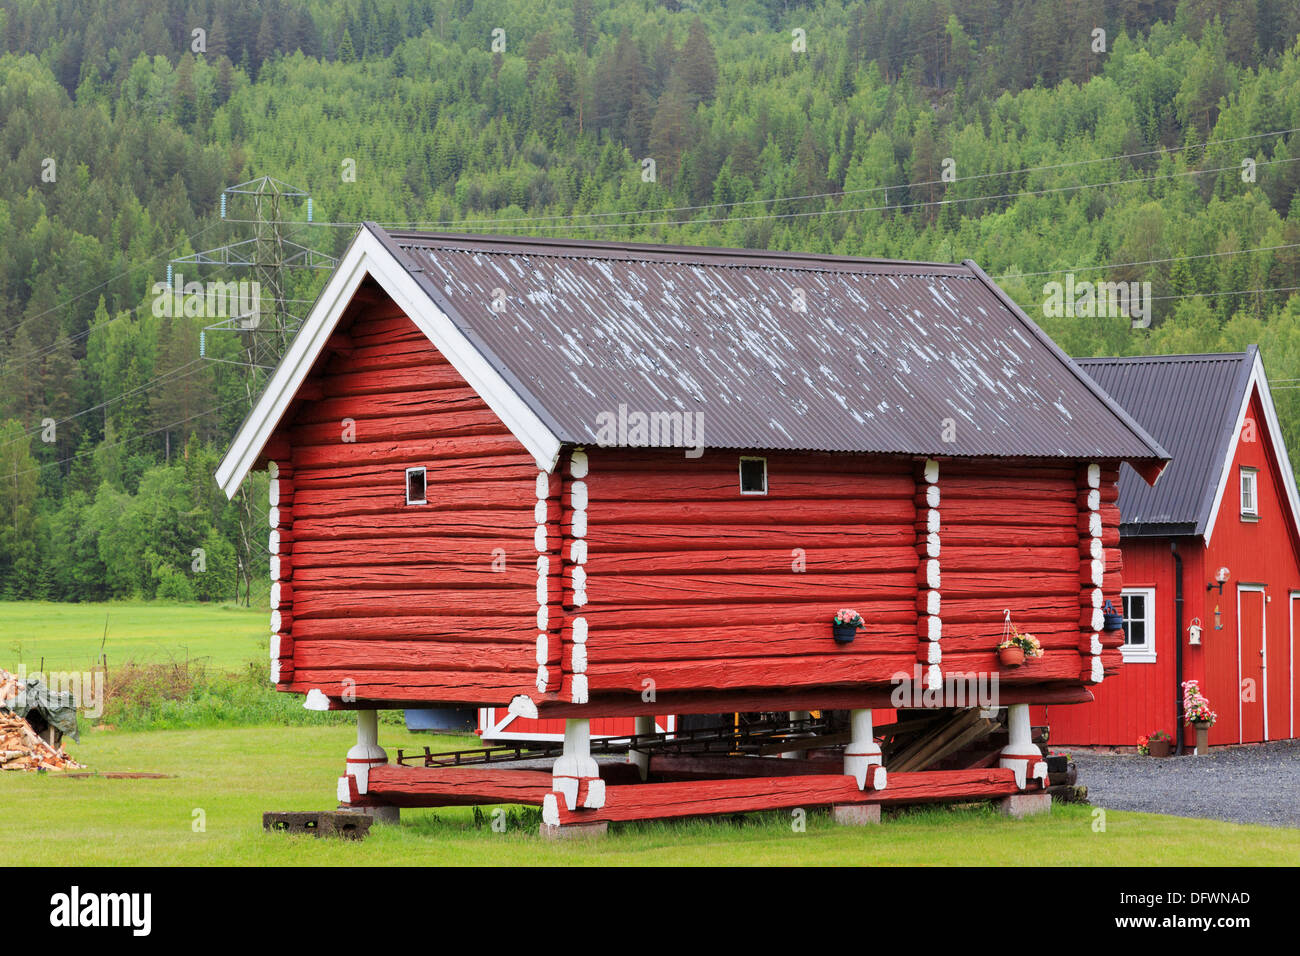 En bois rouge traditionnel grain store sur pilotis sur une exploitation agricole en Norvège Telemark Scandinavie Banque D'Images